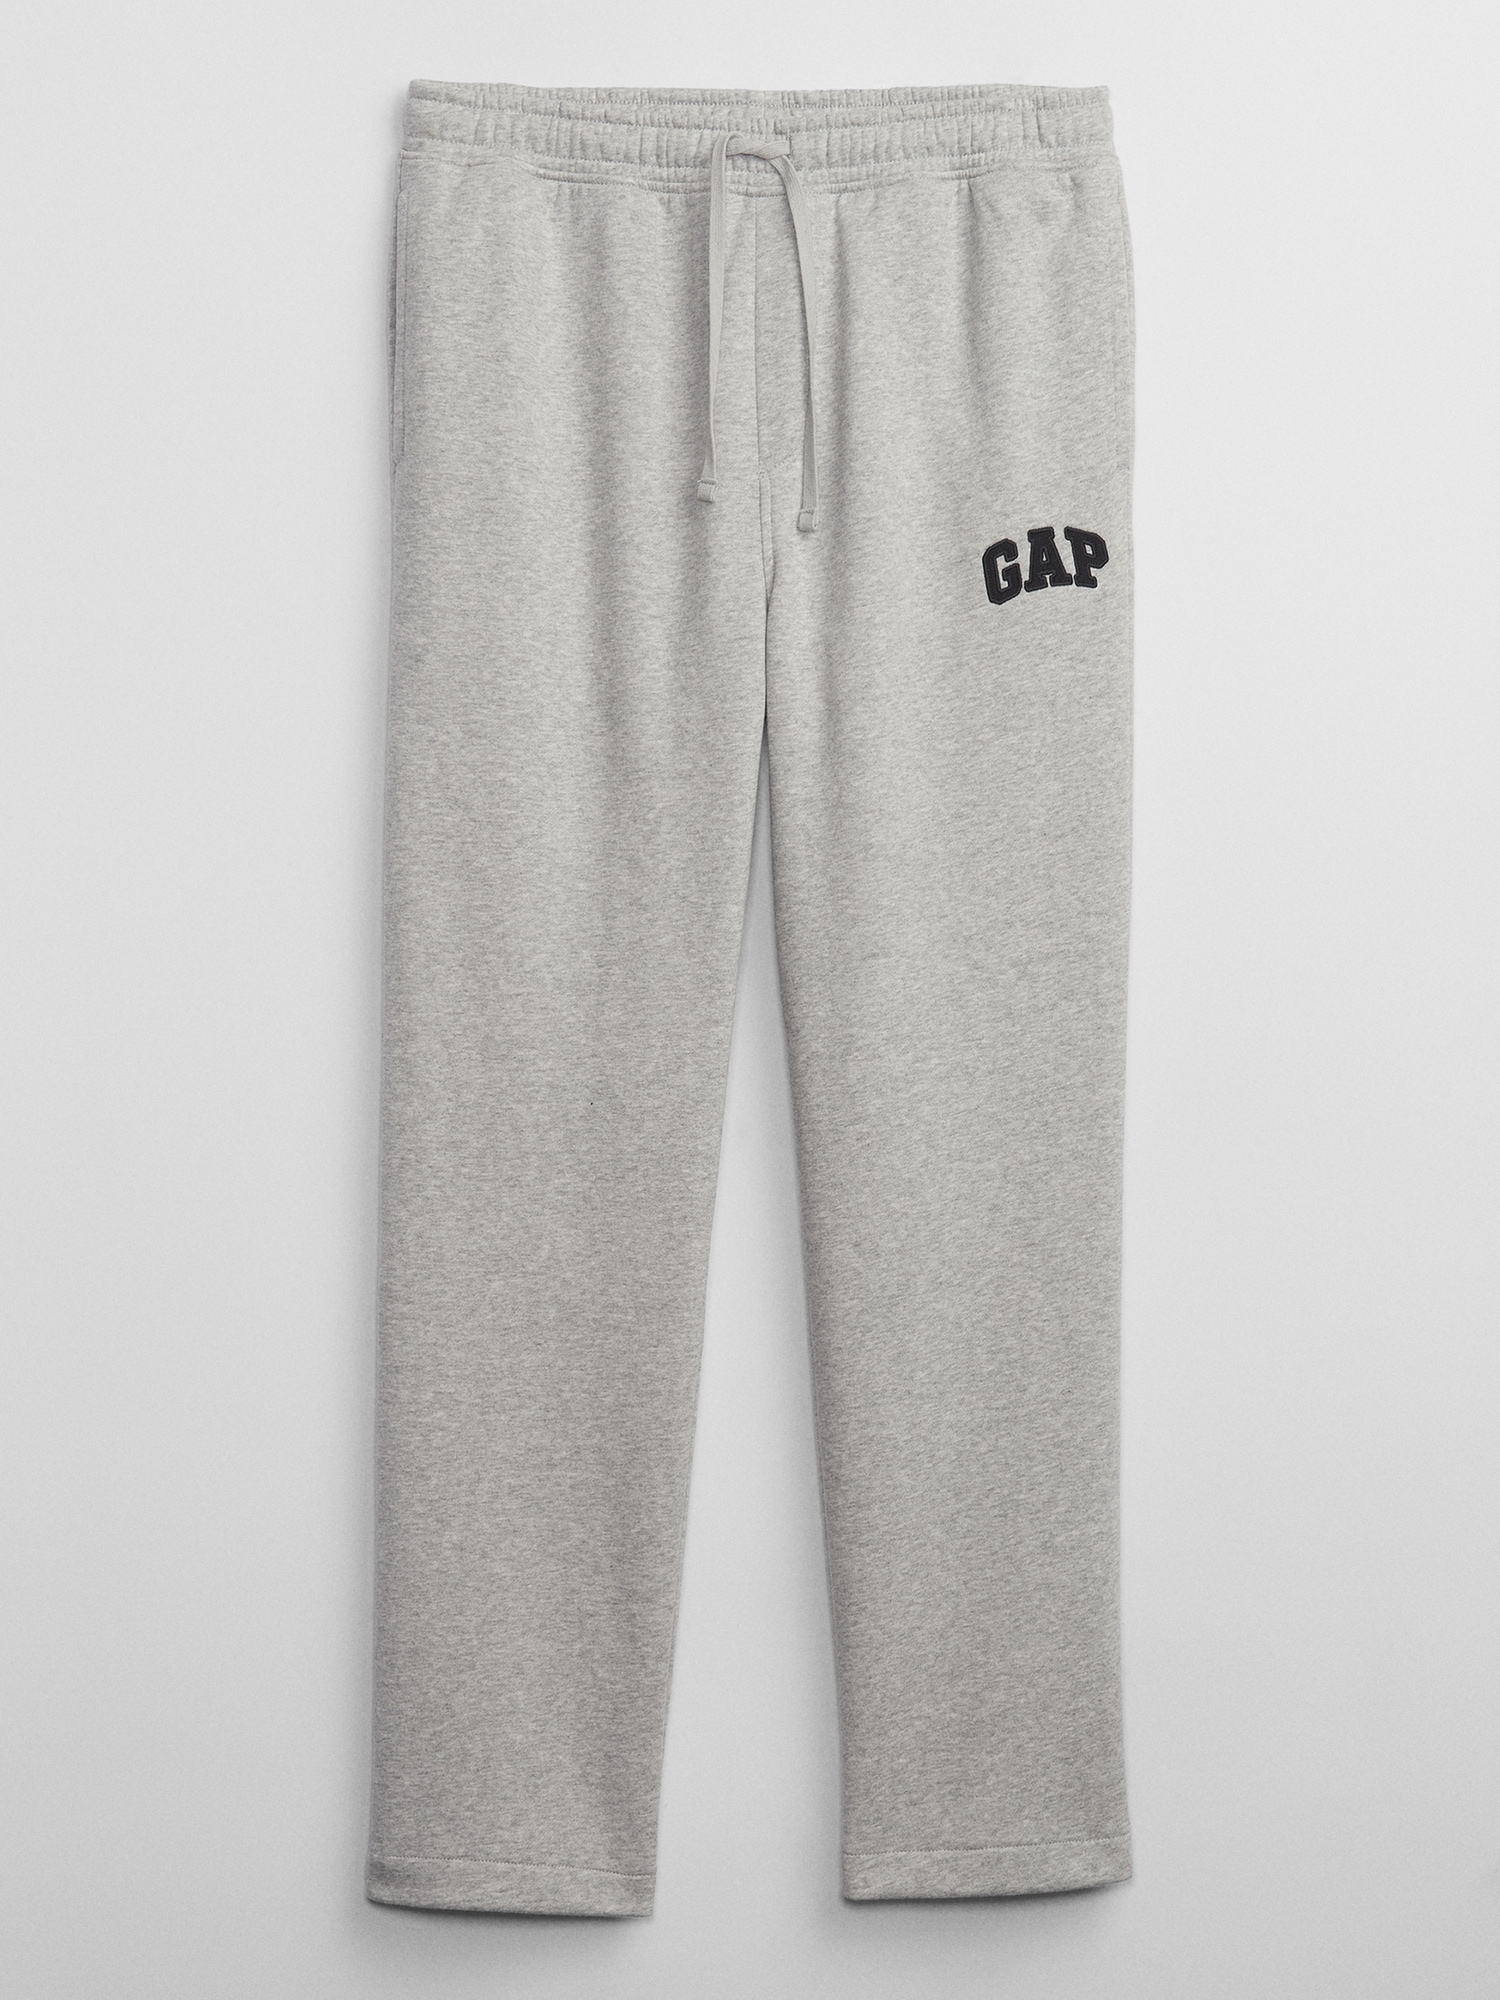 Gap Logo Athletic Sweat Pants for Men